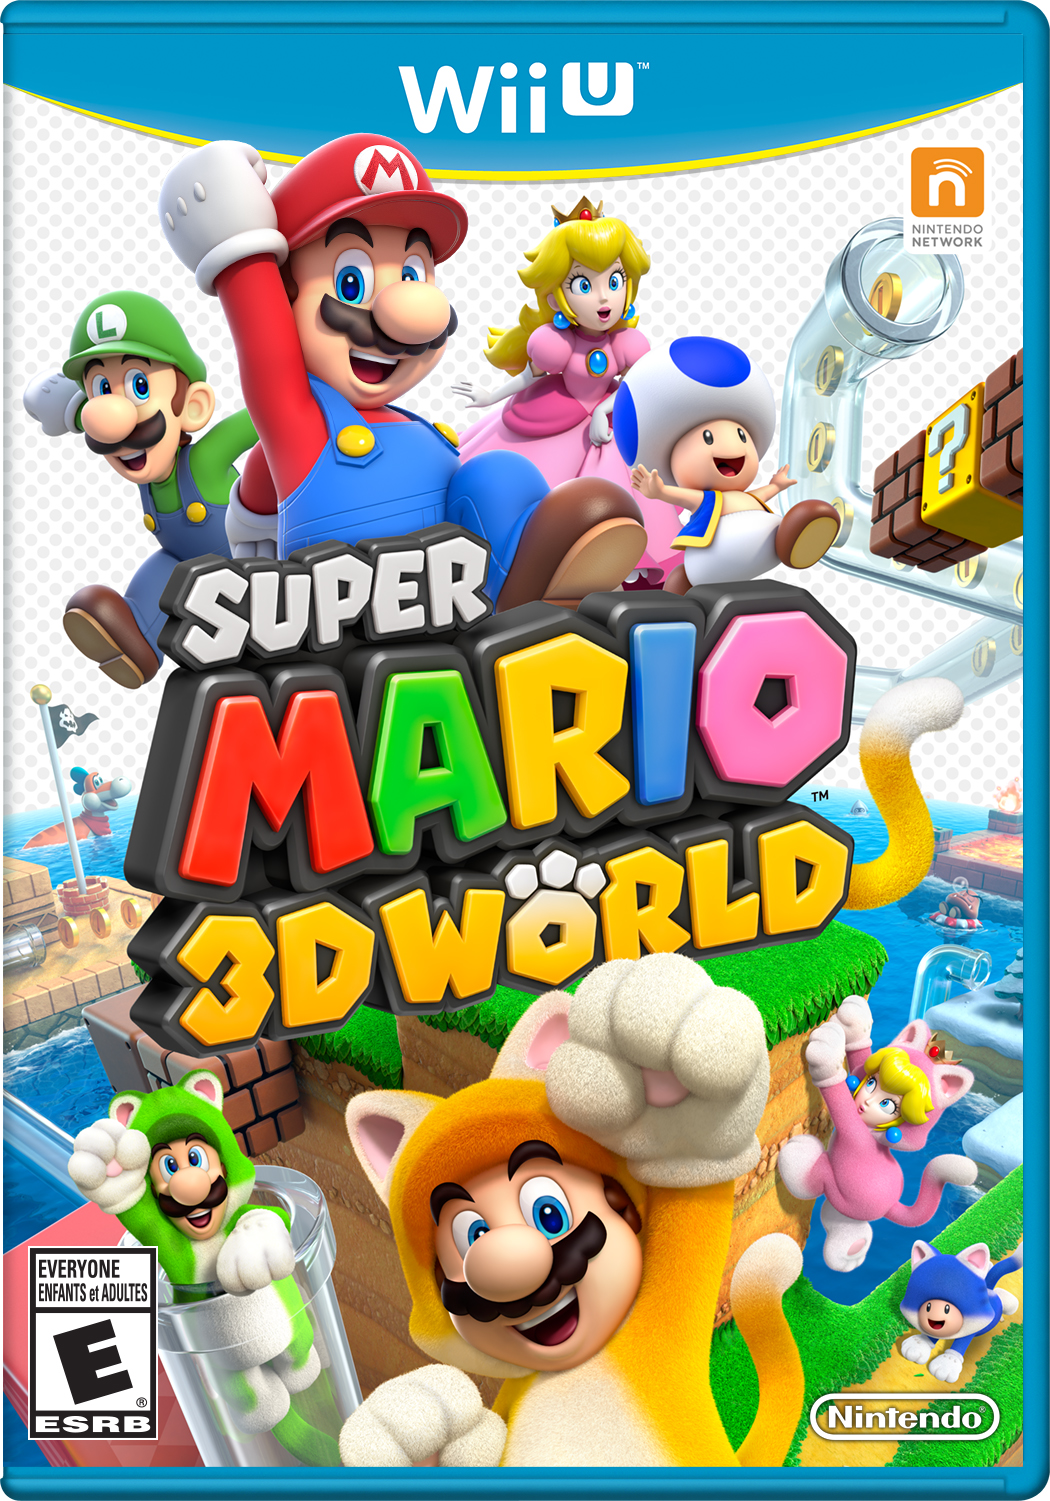 super mario 3d world logo png